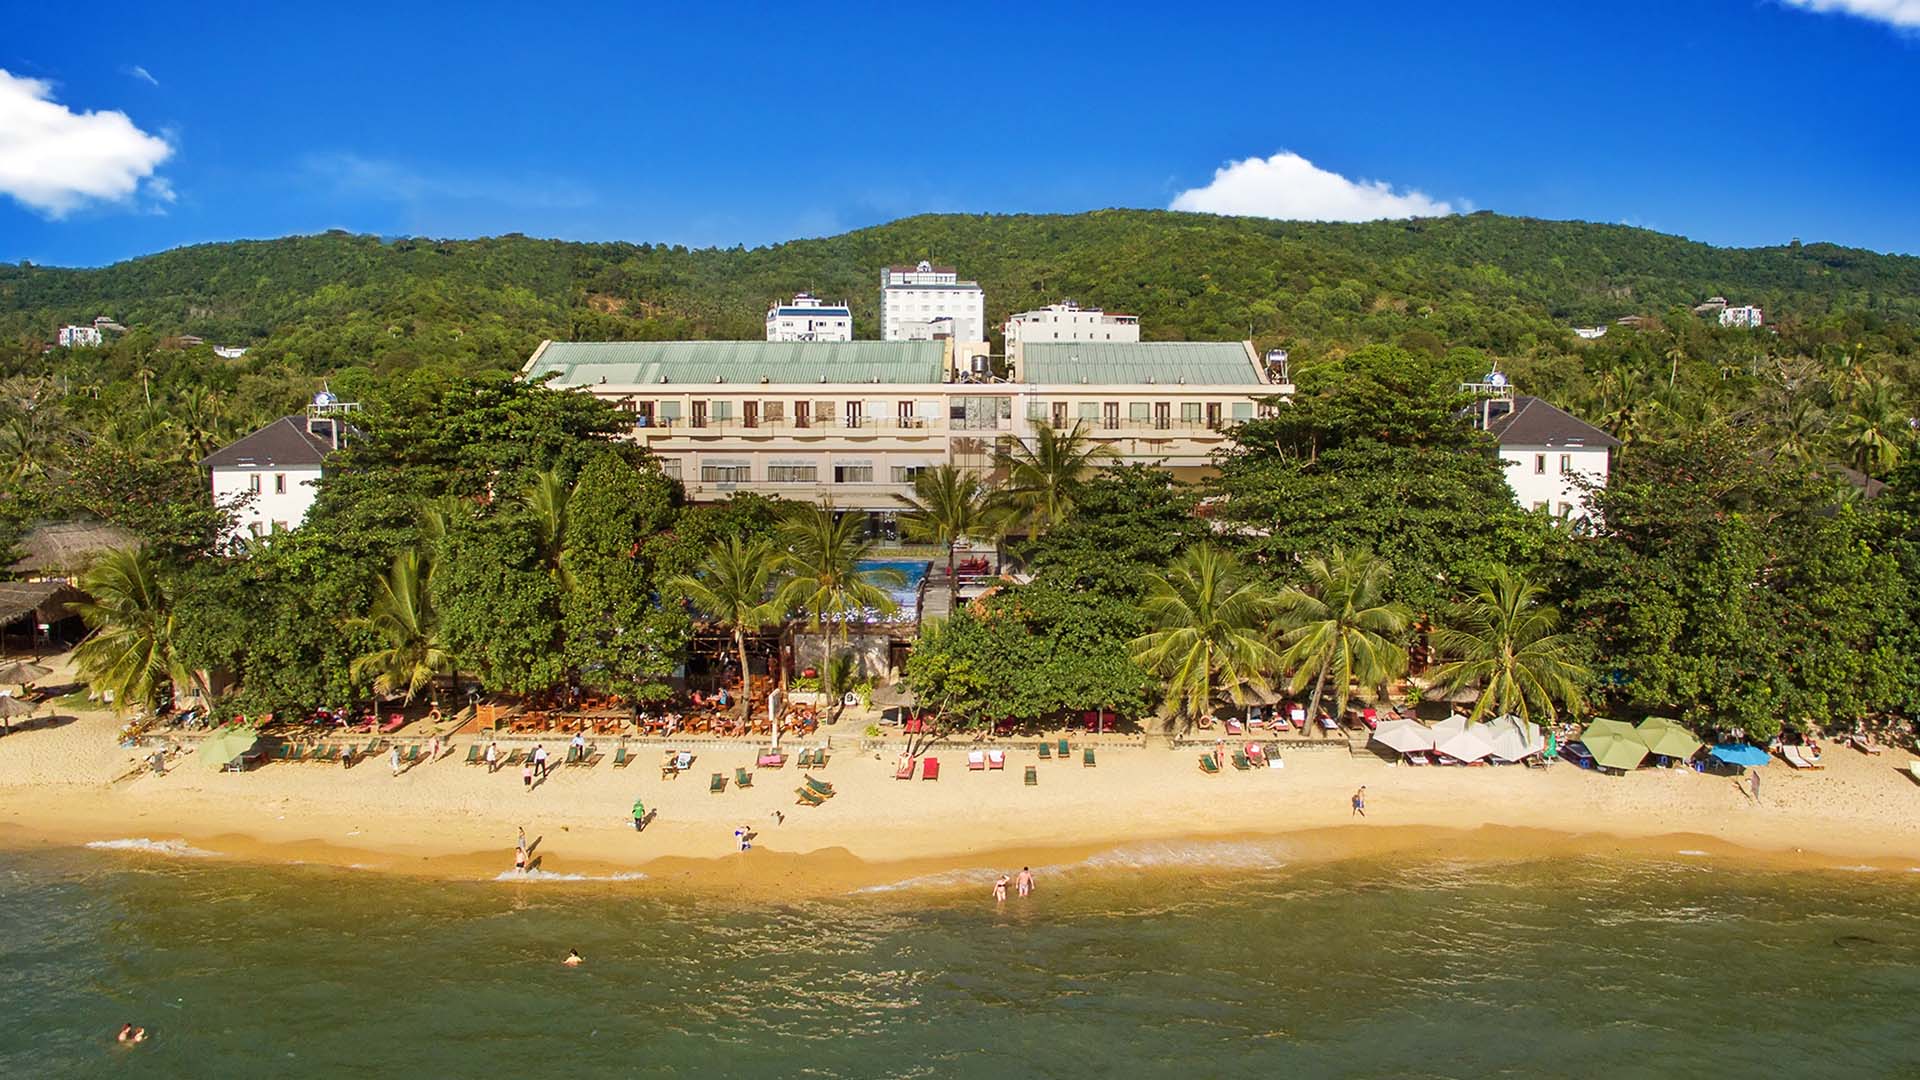 Trải nghiệm sự sang trọng khu nghỉ dưỡng Kim Hoa (Kim Hoa Resort)